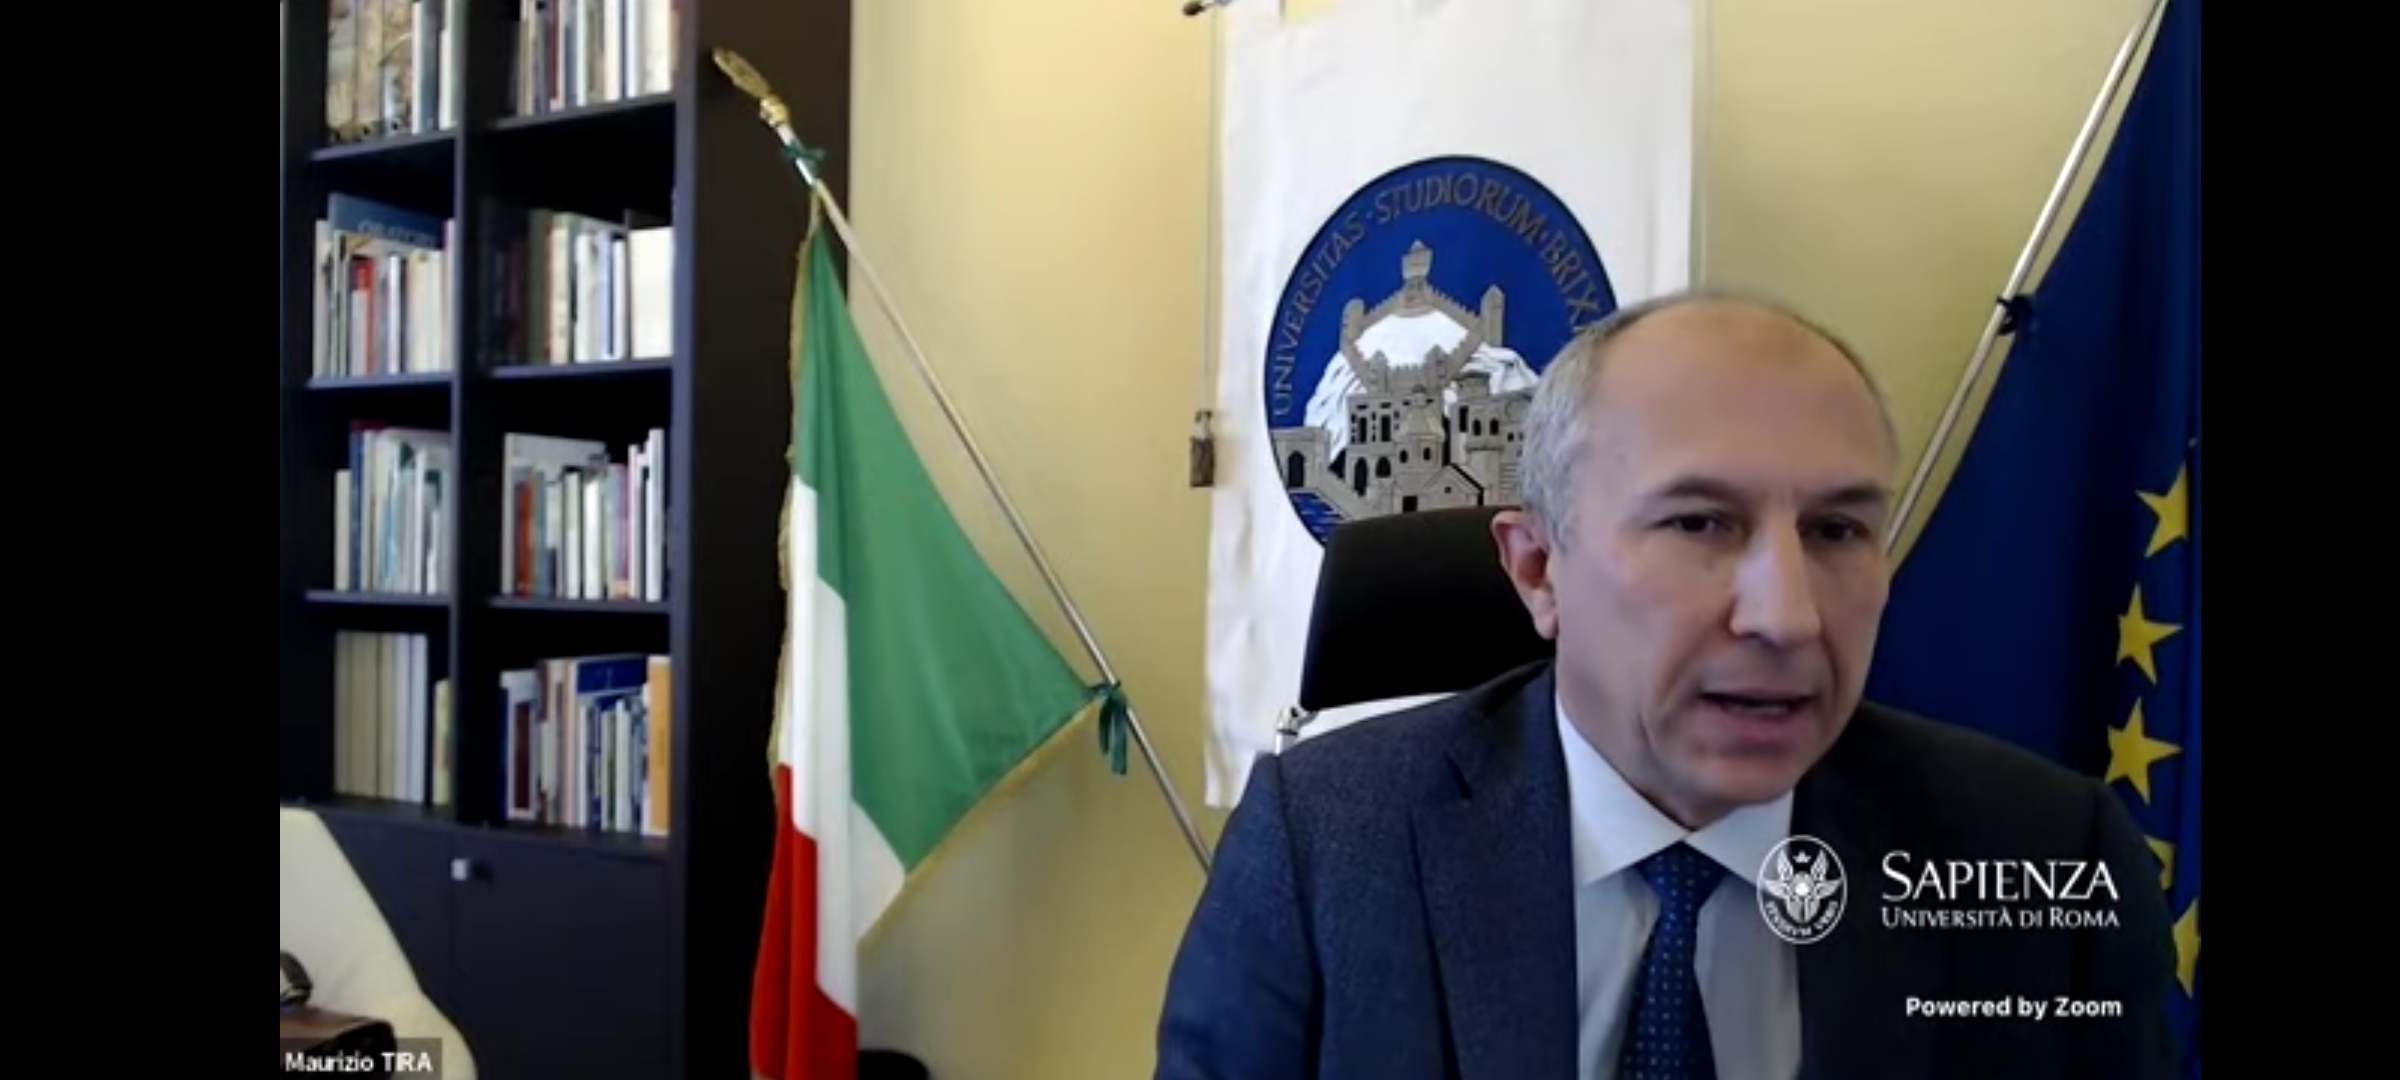 L’Italia di fronte alla sfida della crisi afghana: proteggere la libertà accademica attraverso l’accoglienza